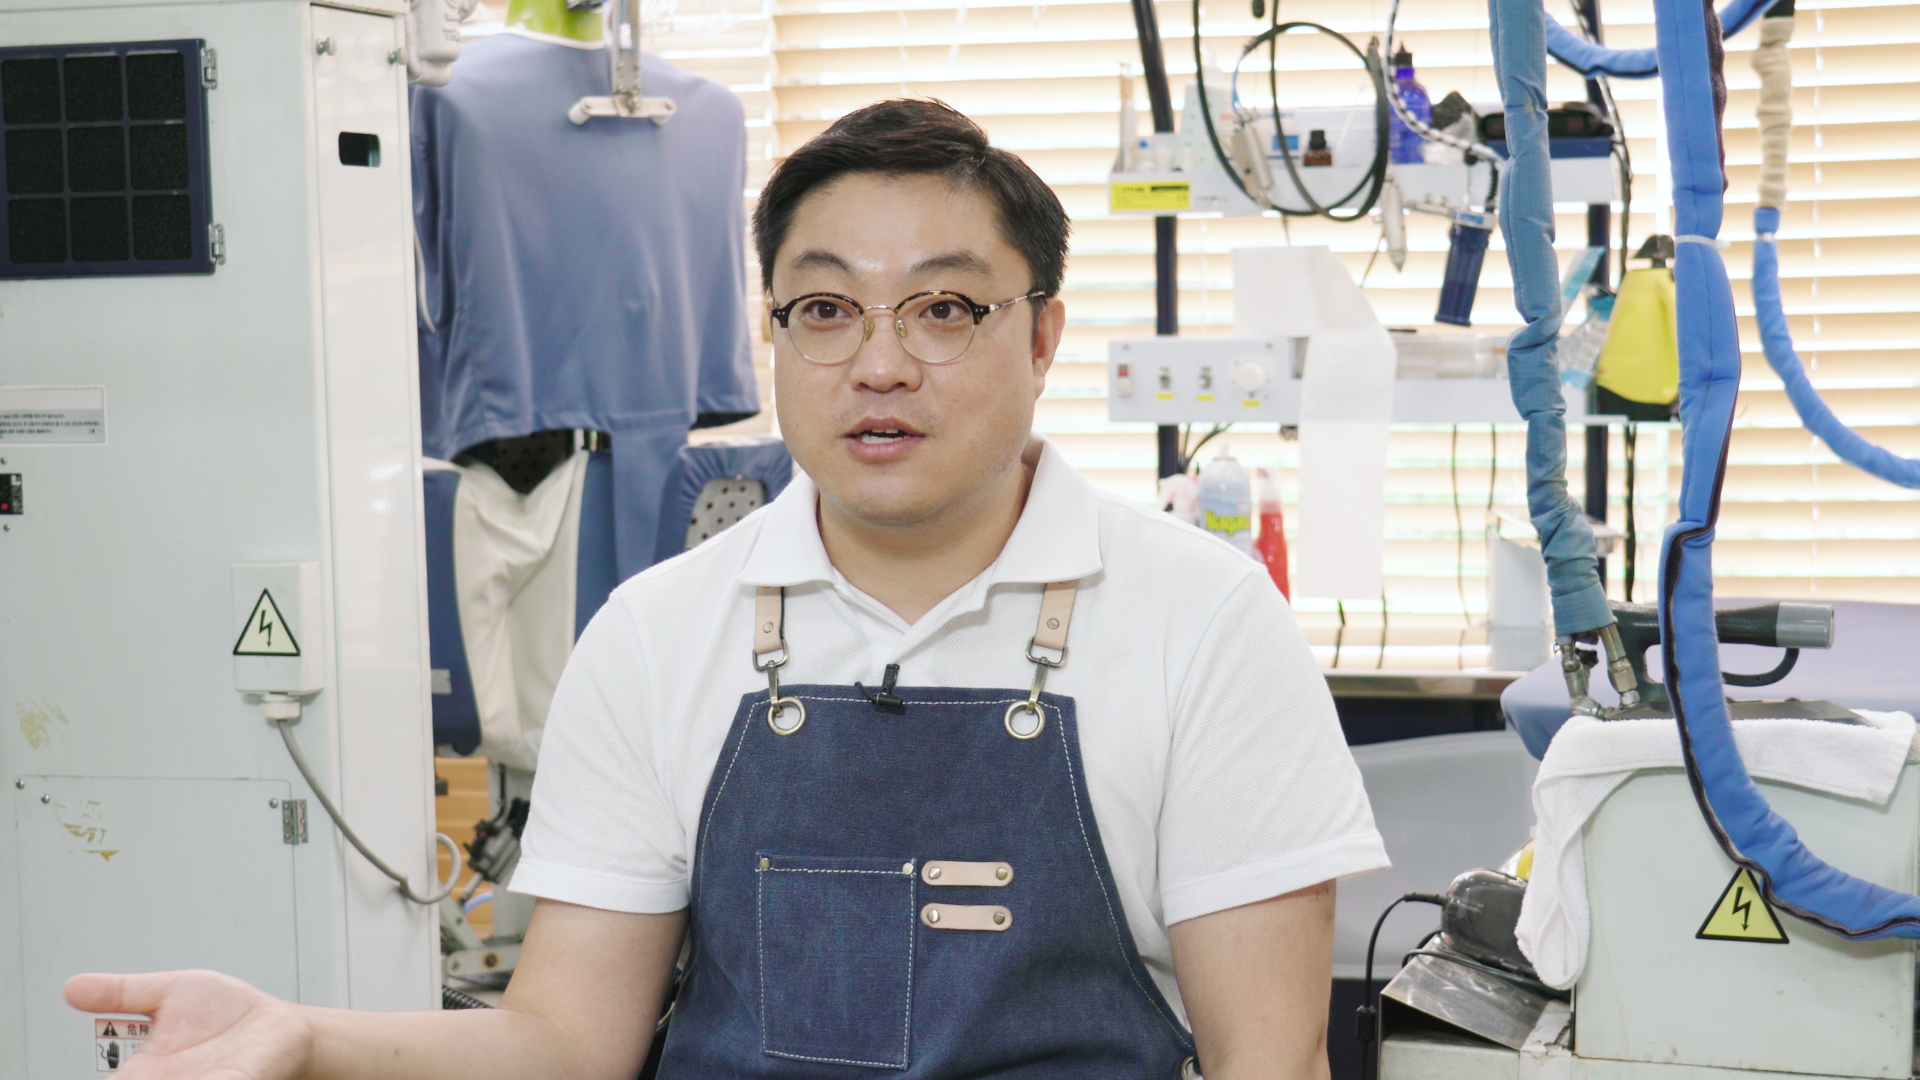 세탁 유튜브 채널 ‘세탁설’을 운영하는 설재원(42)씨. 김형우 기자 hwkim@seoul.co.kr